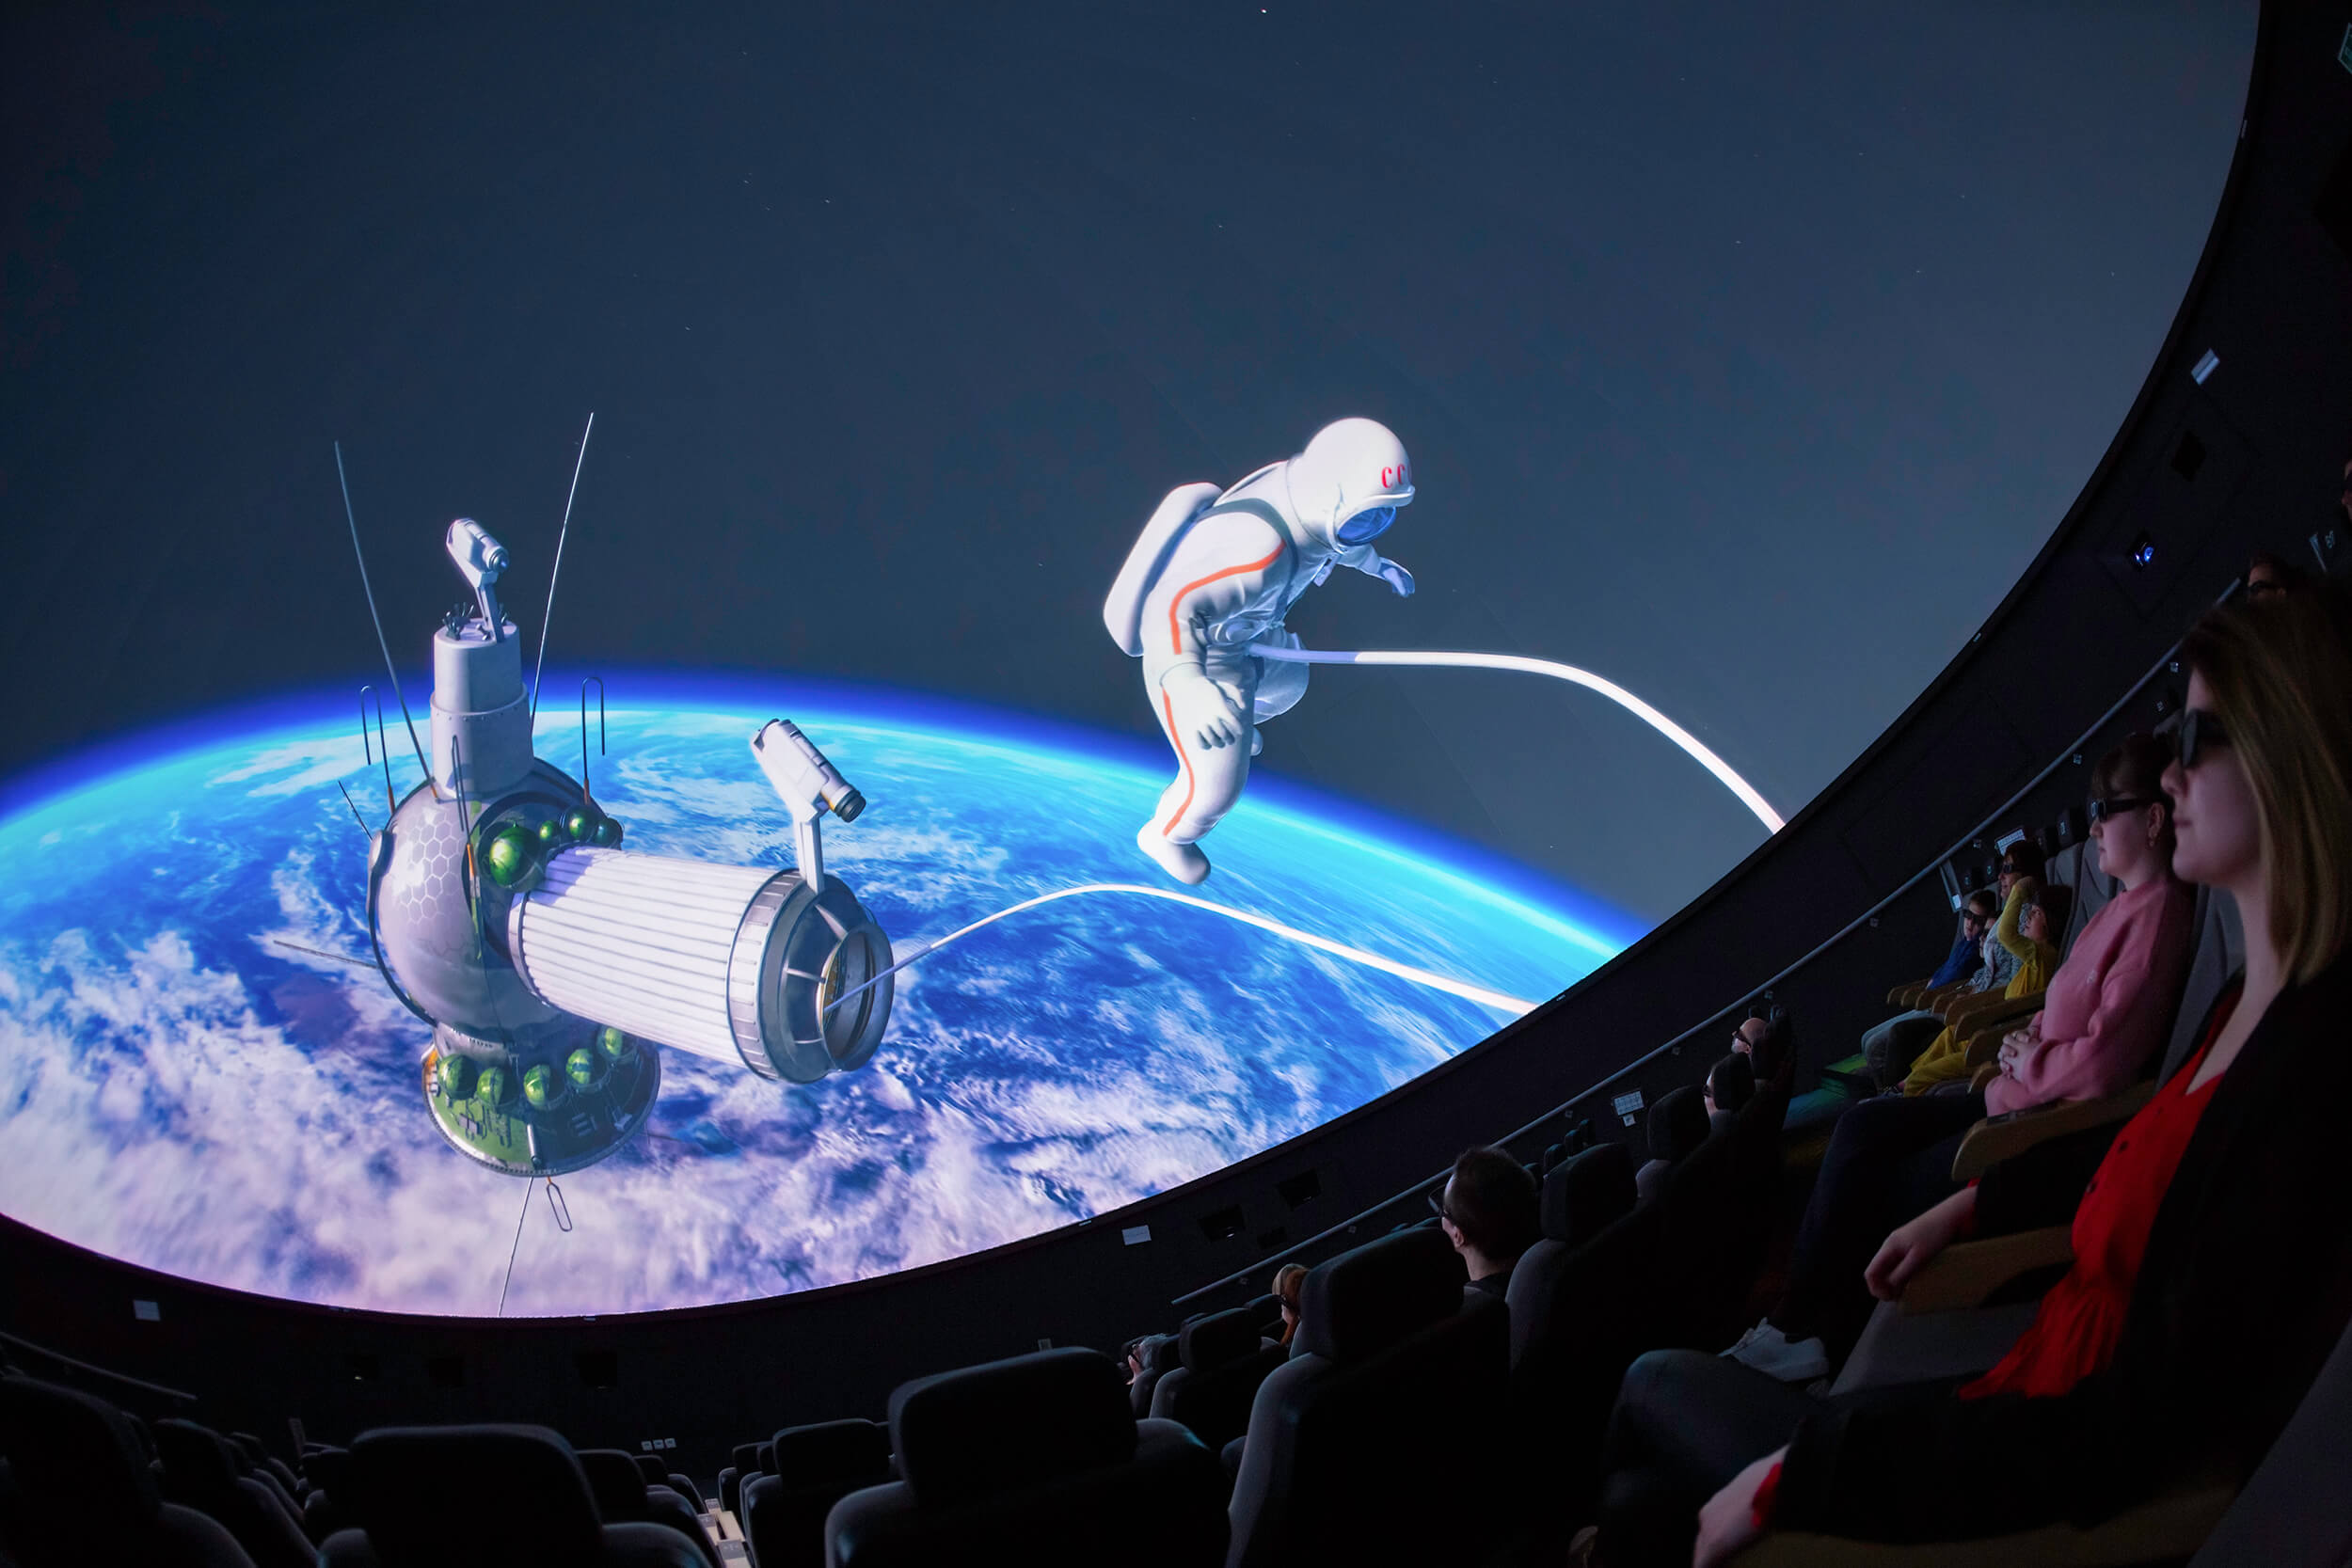 Voyage spatial à 360° entertainment Emmener vos convives dans les étoiles à bord du Planétarium 10K-3D le plus moderne au monde !
Faites vivre l'expérience de flotter dans l’Univers, foncer vers la Lune à bord de Saturn V, poser le pied sur Mars...

Chaque séance débute par un voyage spatial commenté par un
animateur de la Coupole, suivie d’un film thématique.

Tarifs :
Séance non privatisée : 8€00 TTC par personne
Séance privatisée de planétarium 3D  avec un animateur en soirée 
Tarif:  220 € TTC + 8 € TTC par personne 